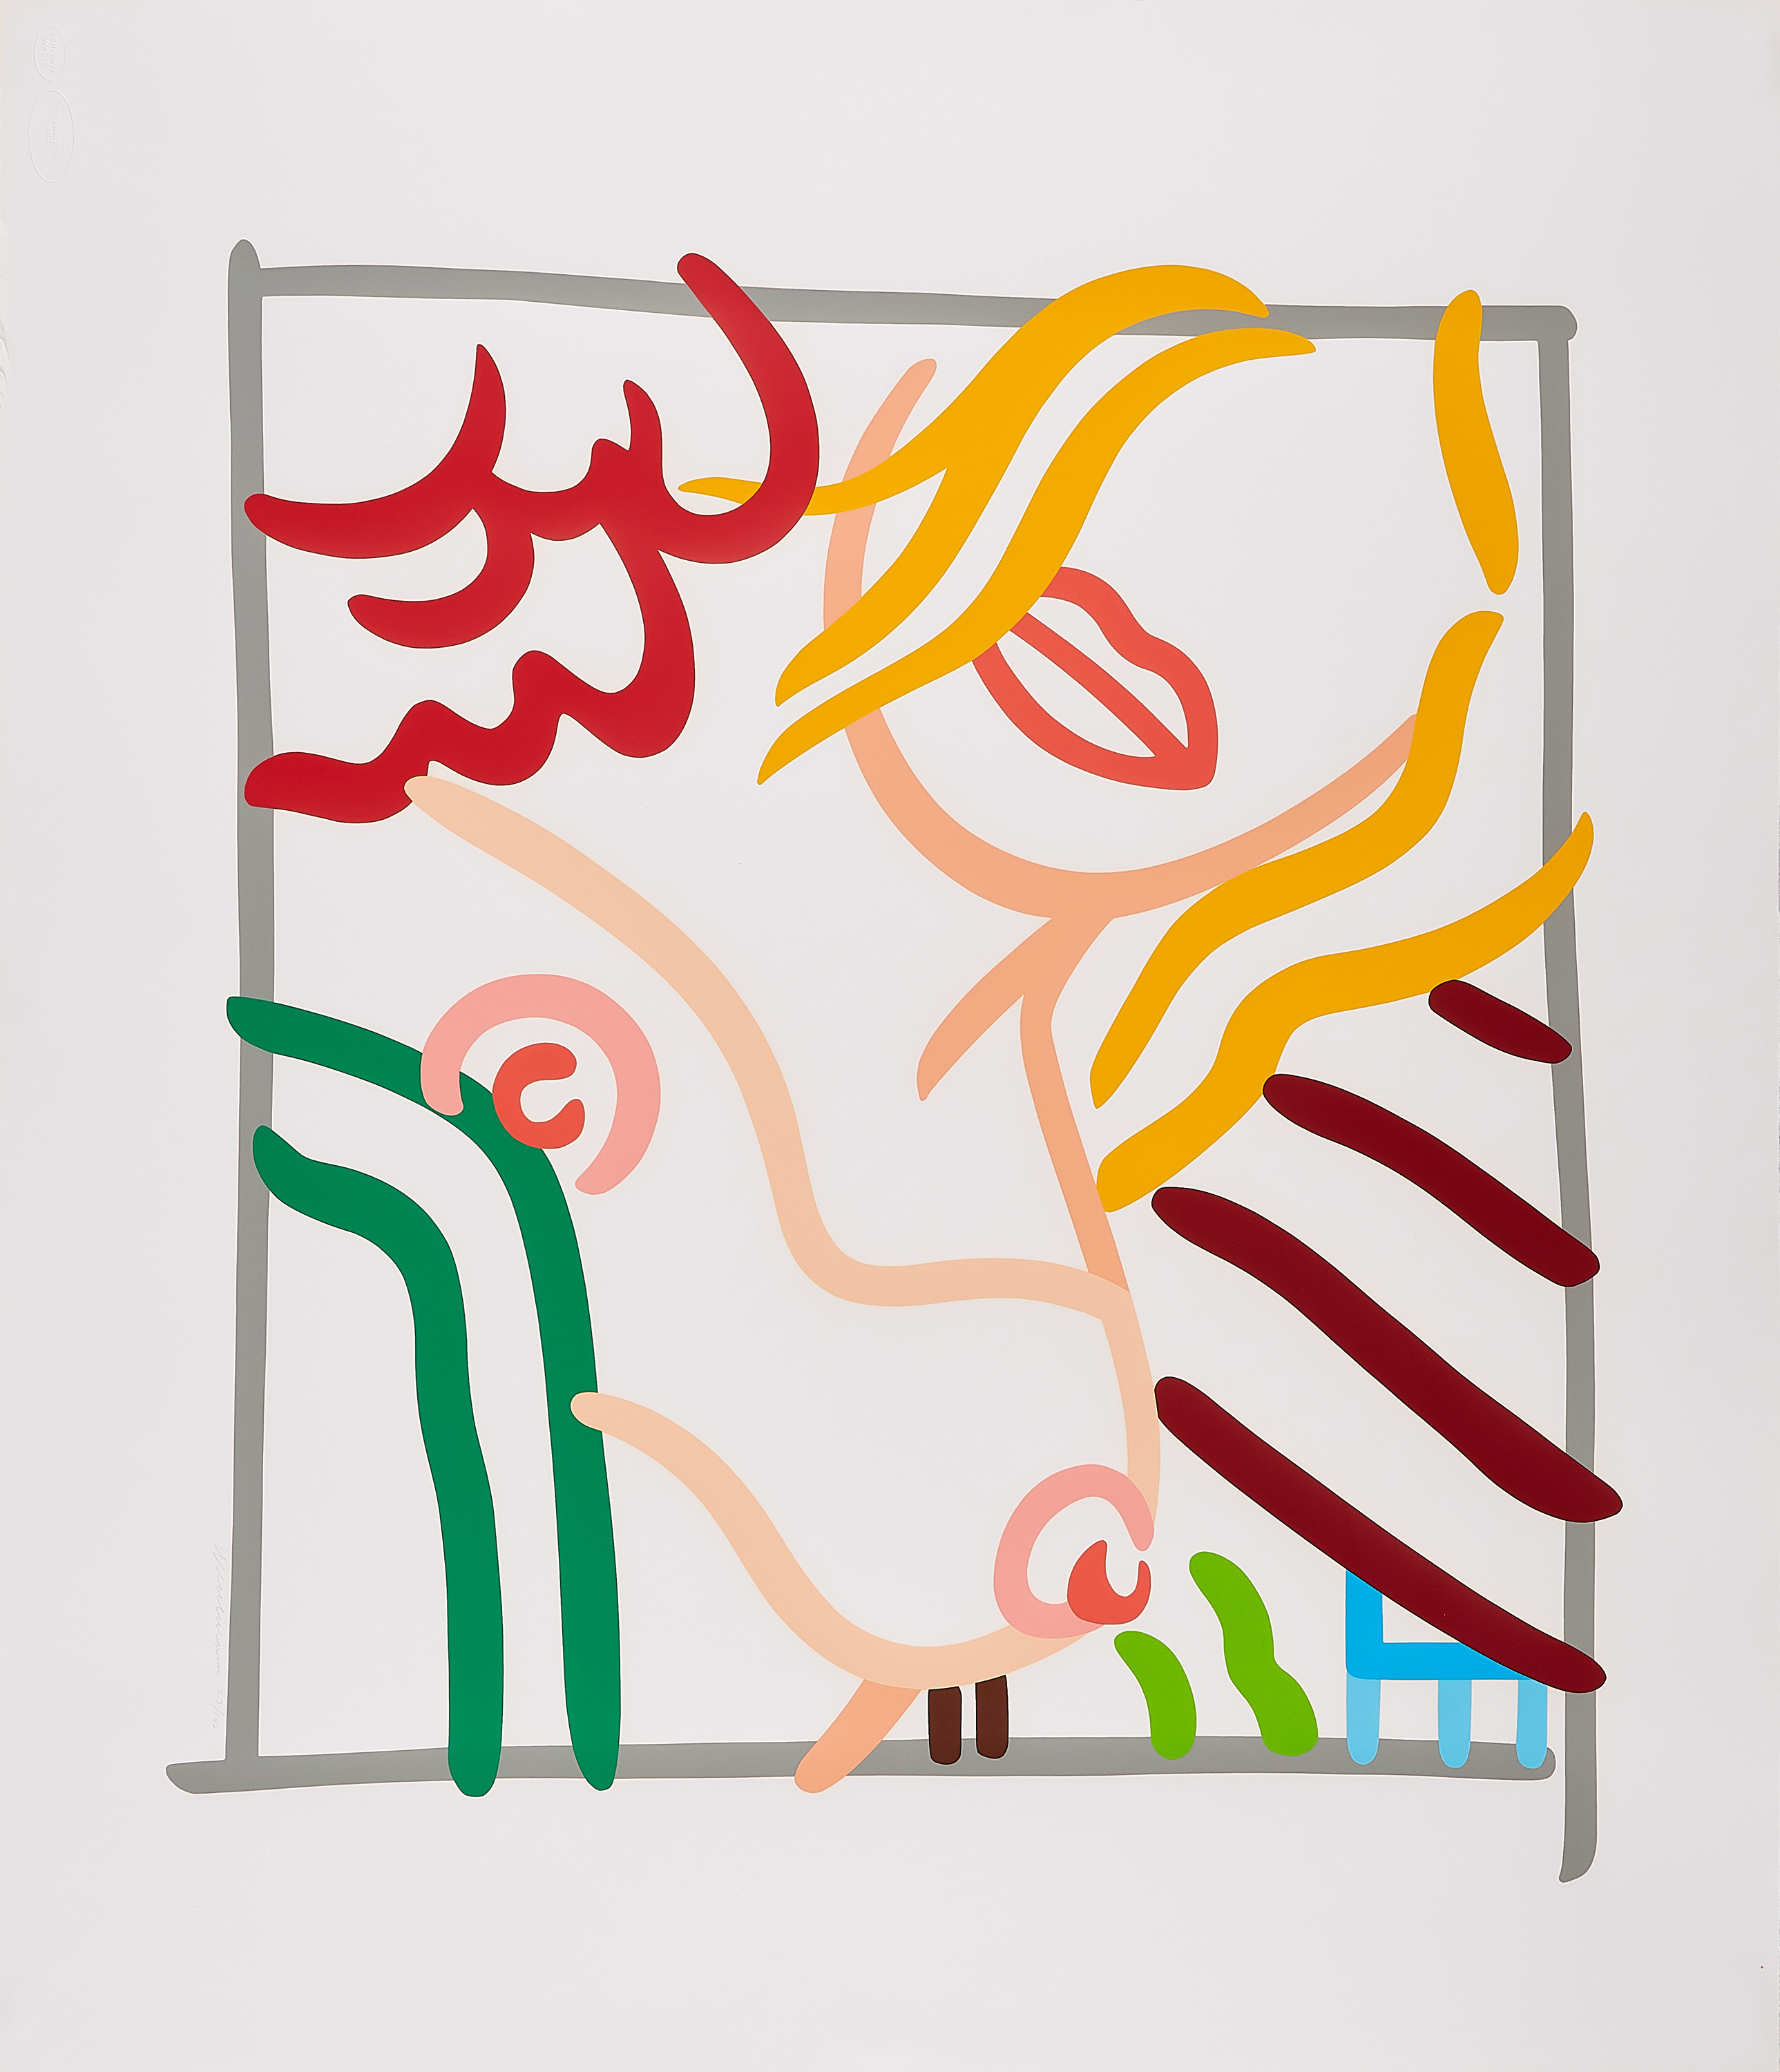 Tom Wesselmann - New Bedroom Blonde Doodle, 75888-1, Van Ham Kunstauktionen